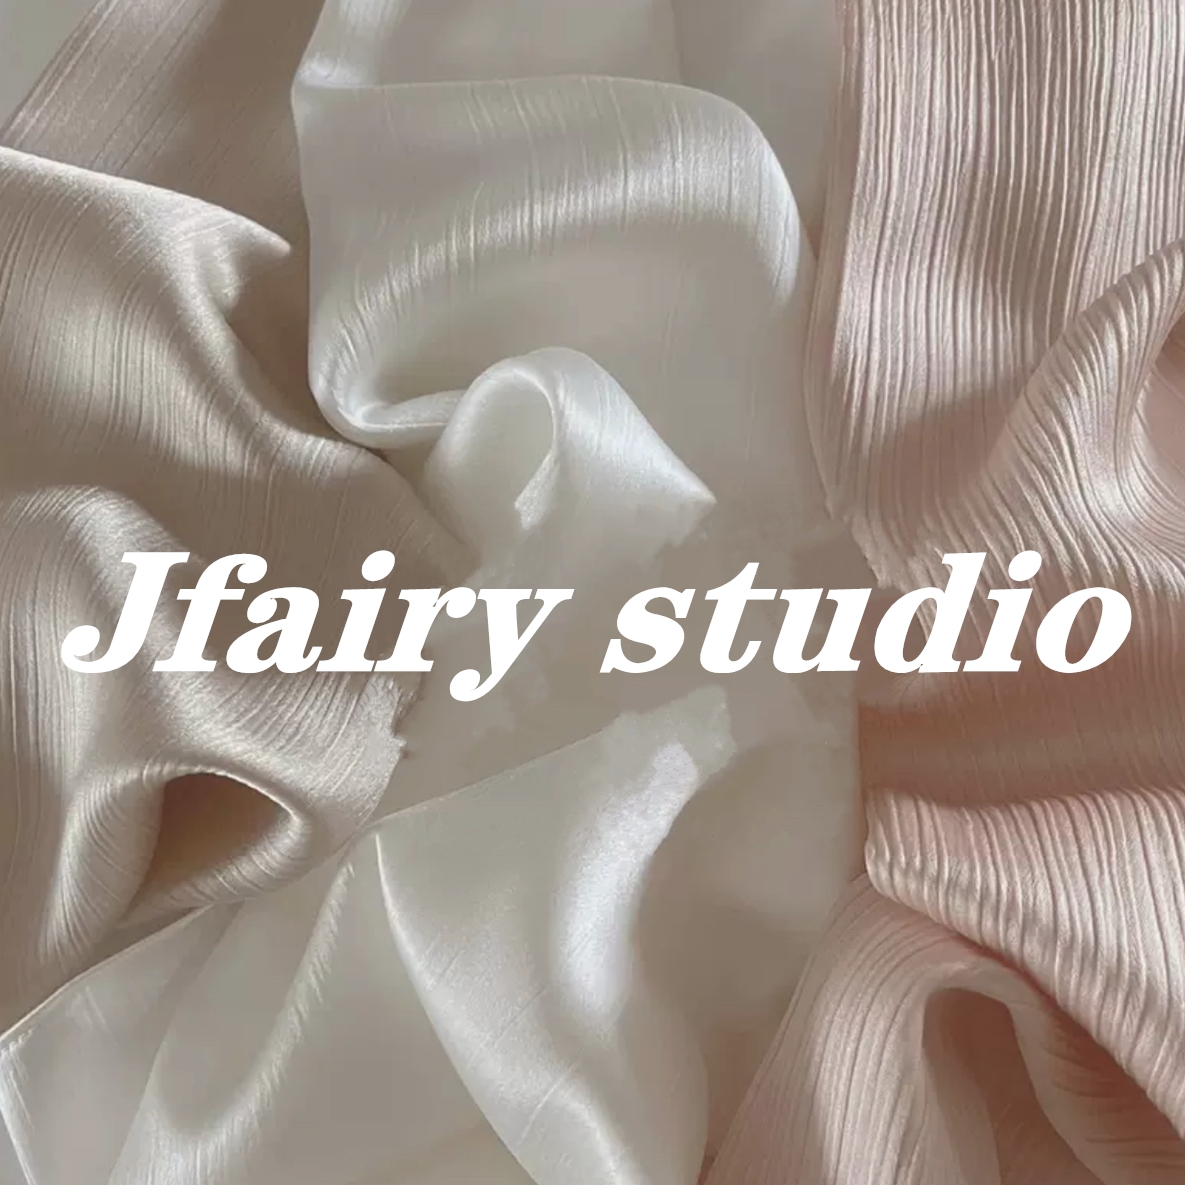 Jfairy studio